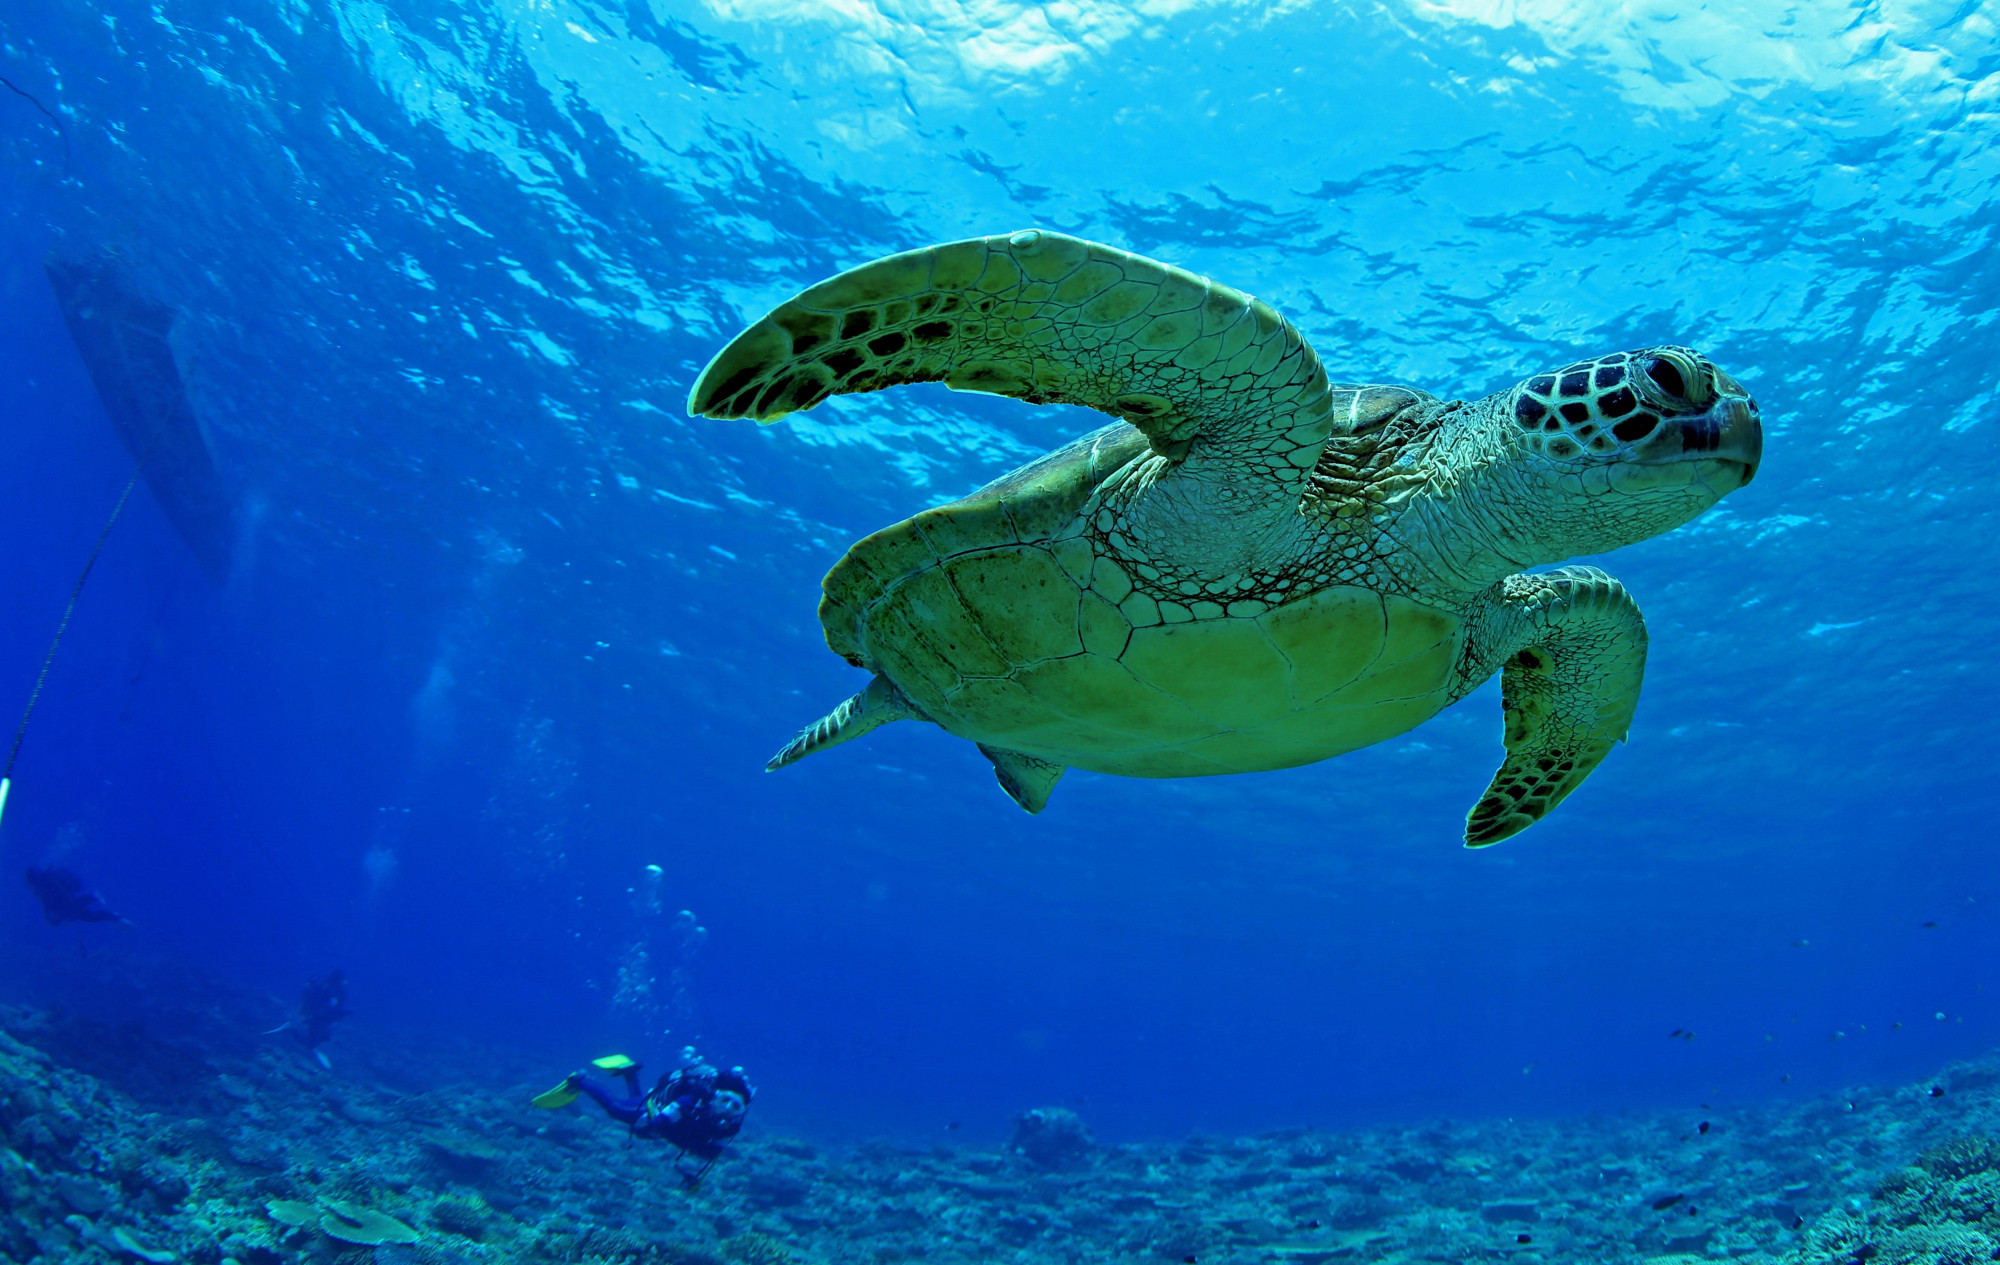 Pusztul a tengerifű, és ez megpecsételheti a levesteknősök sorsát is